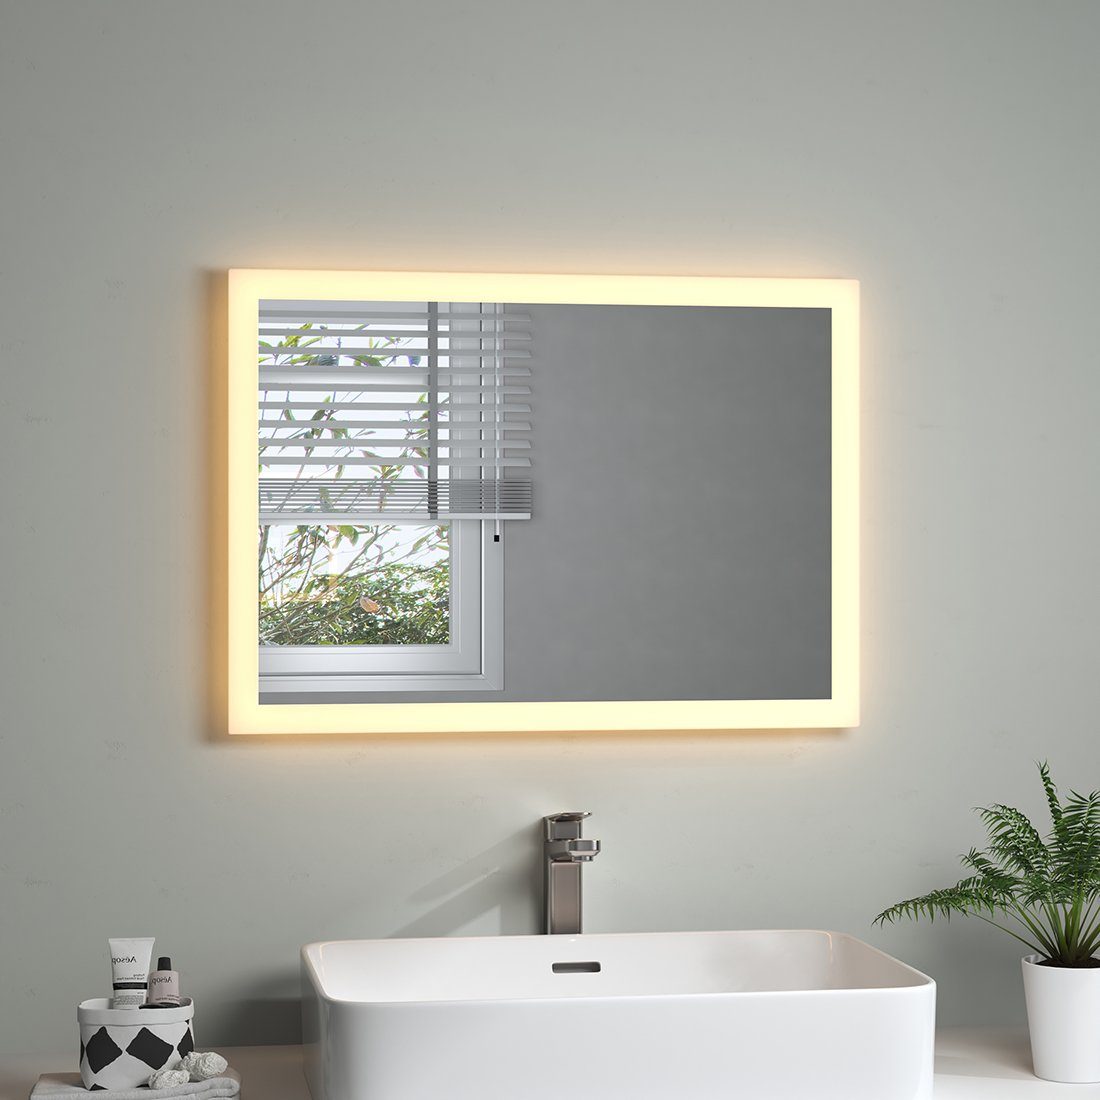 S'AFIELINA Badspiegel Badspiegel mit Beleuchtung LED Lichtspiegel Wandspiegel Energiesparend, Wandschalter,Warmweiß 3000K,Energiesparend, Wandmontage